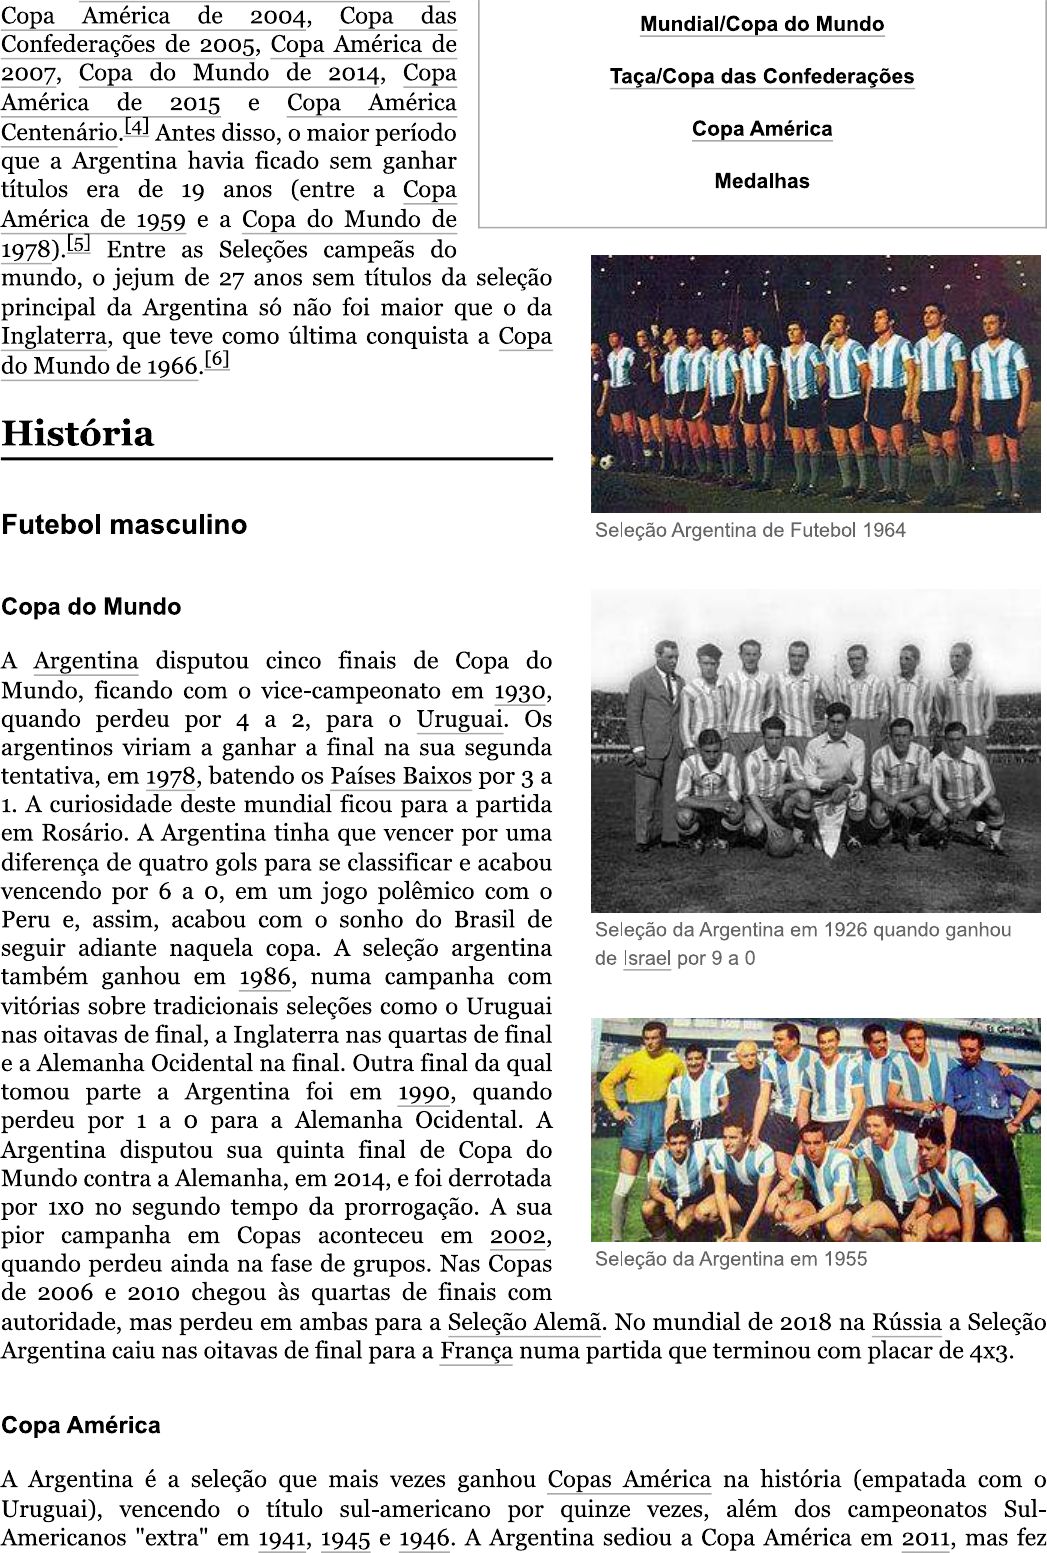 Seleção Neerlandesa de Futebol – Wikipédia, a enciclopédia livre